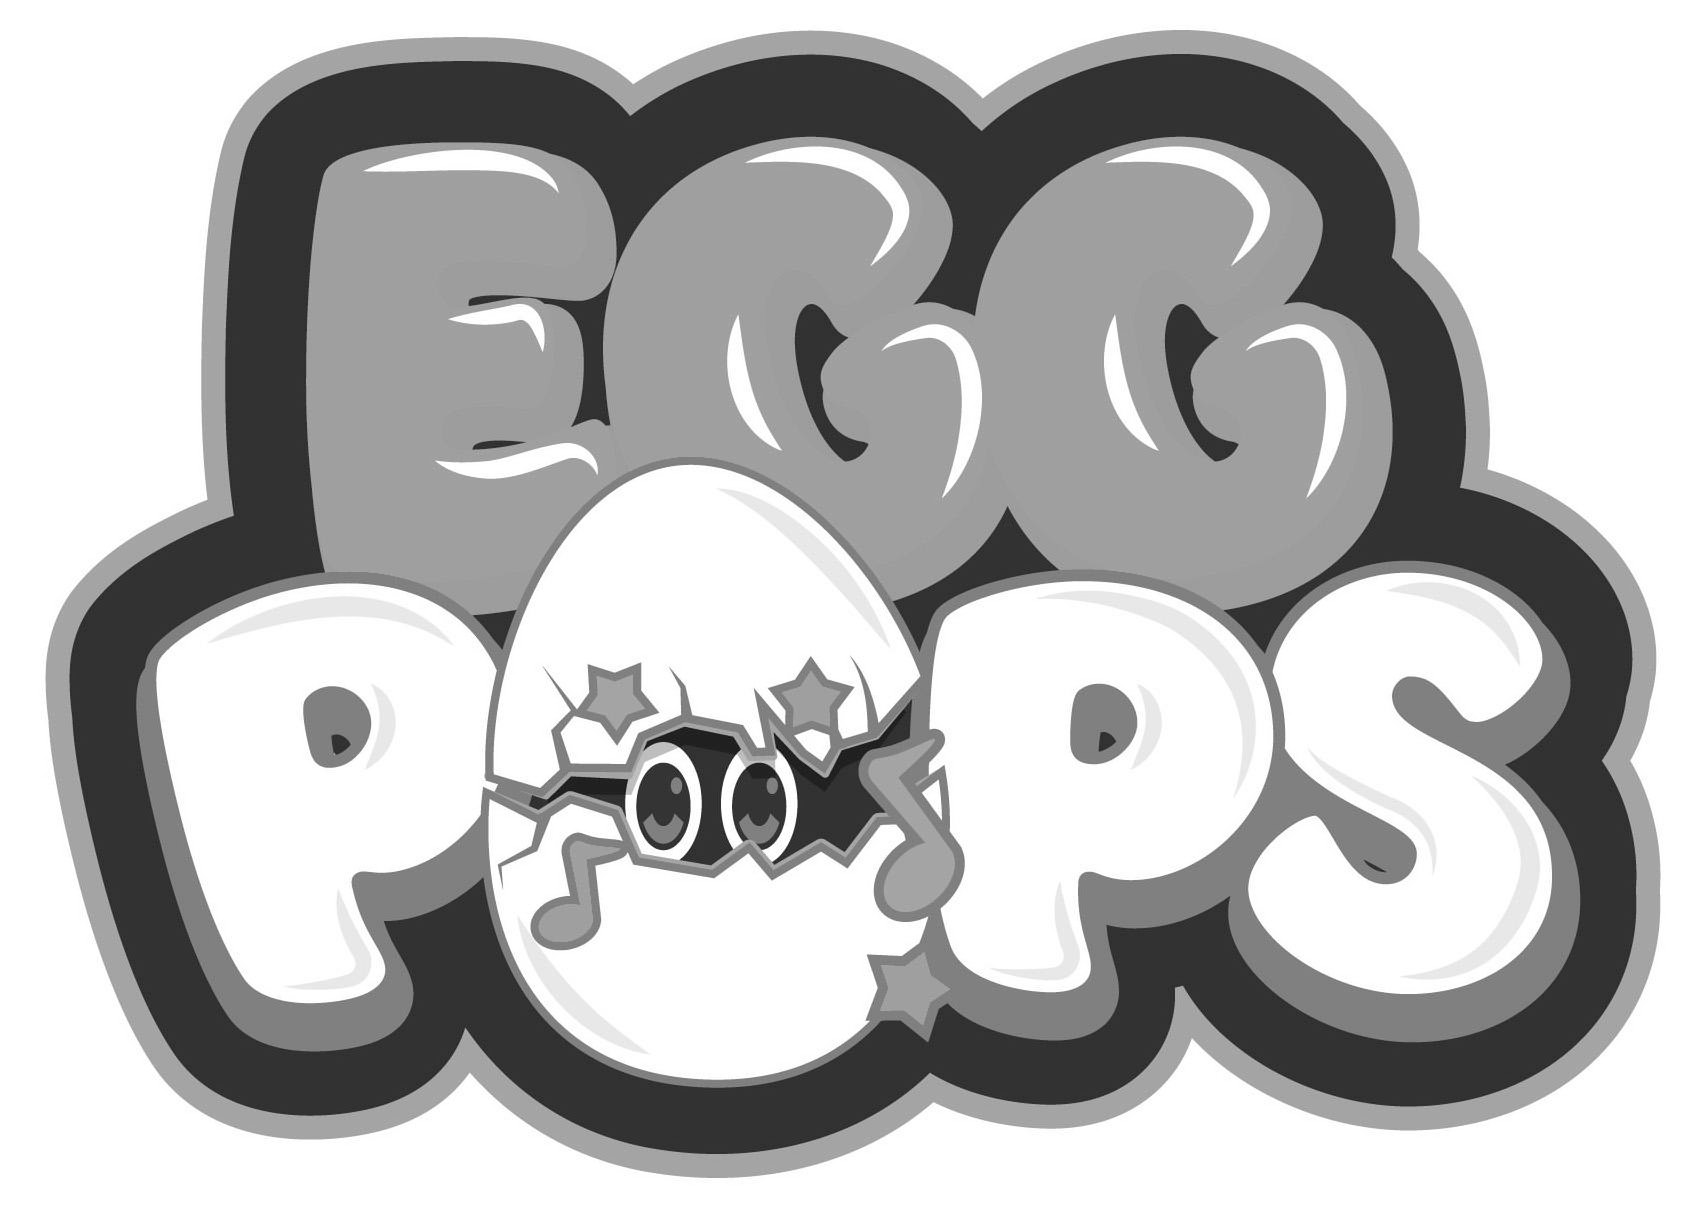  EGG POPS